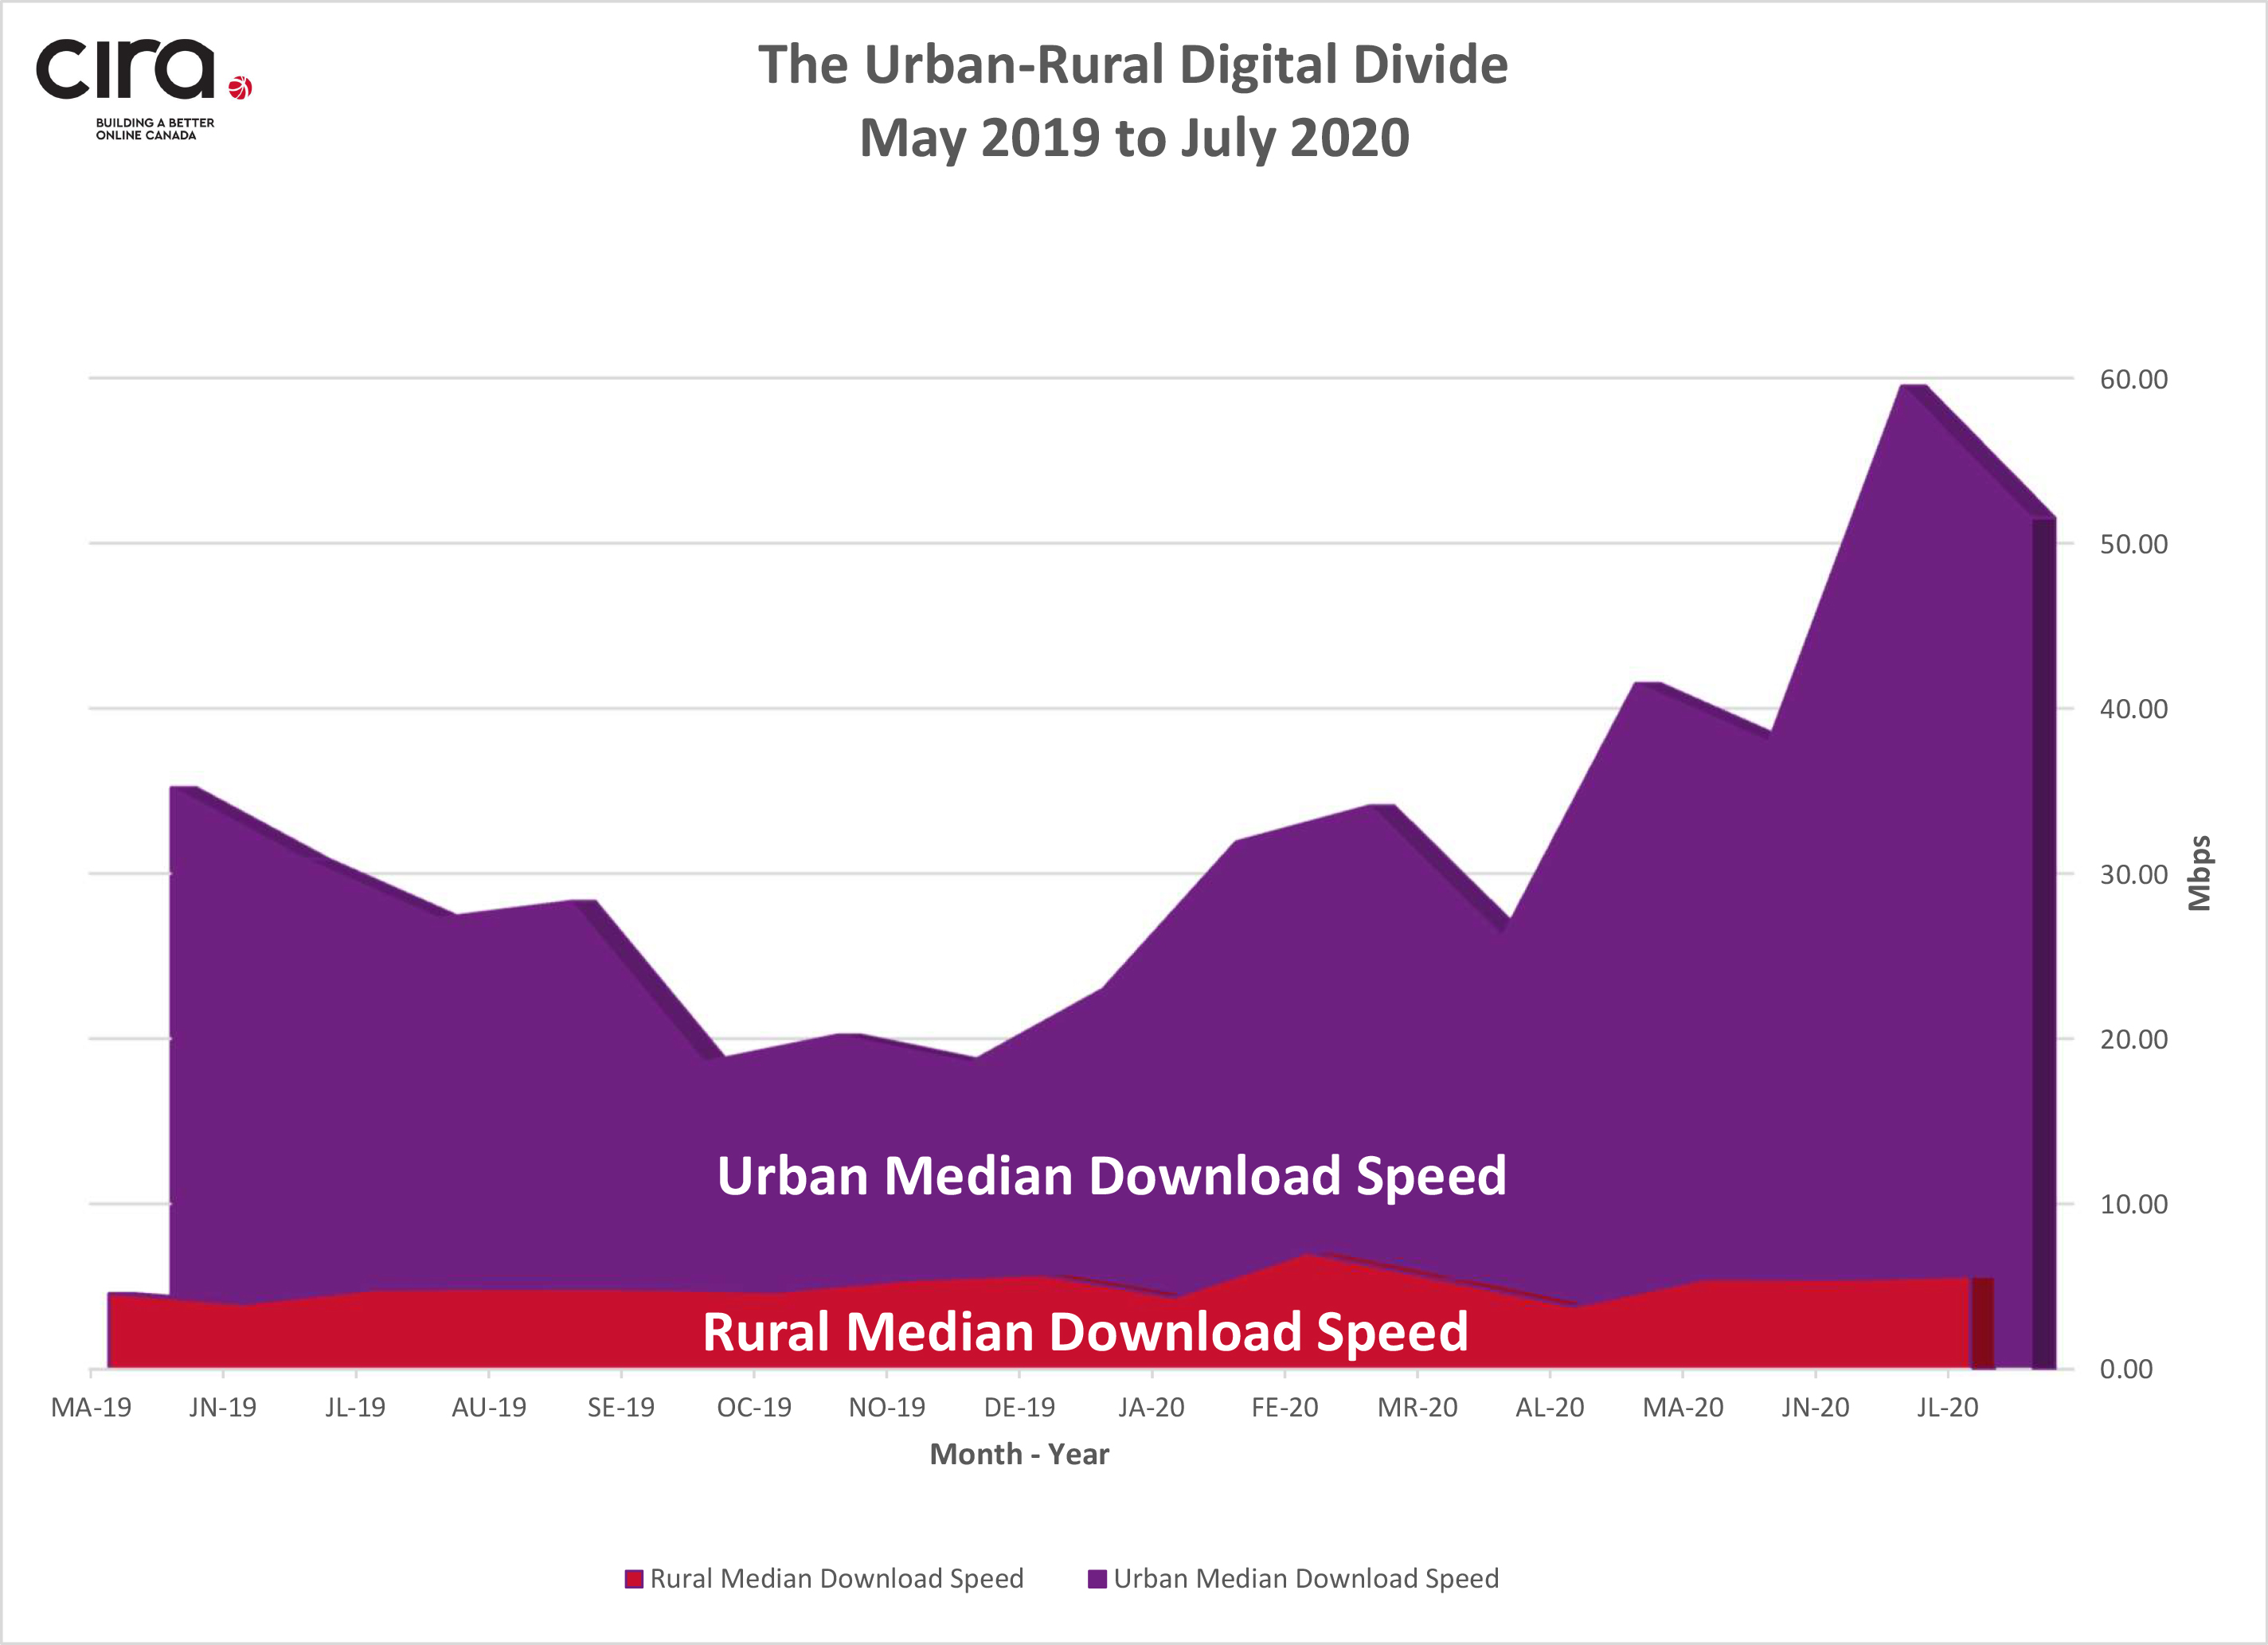 Figure 1 - Urban vs Rural Digital Divide